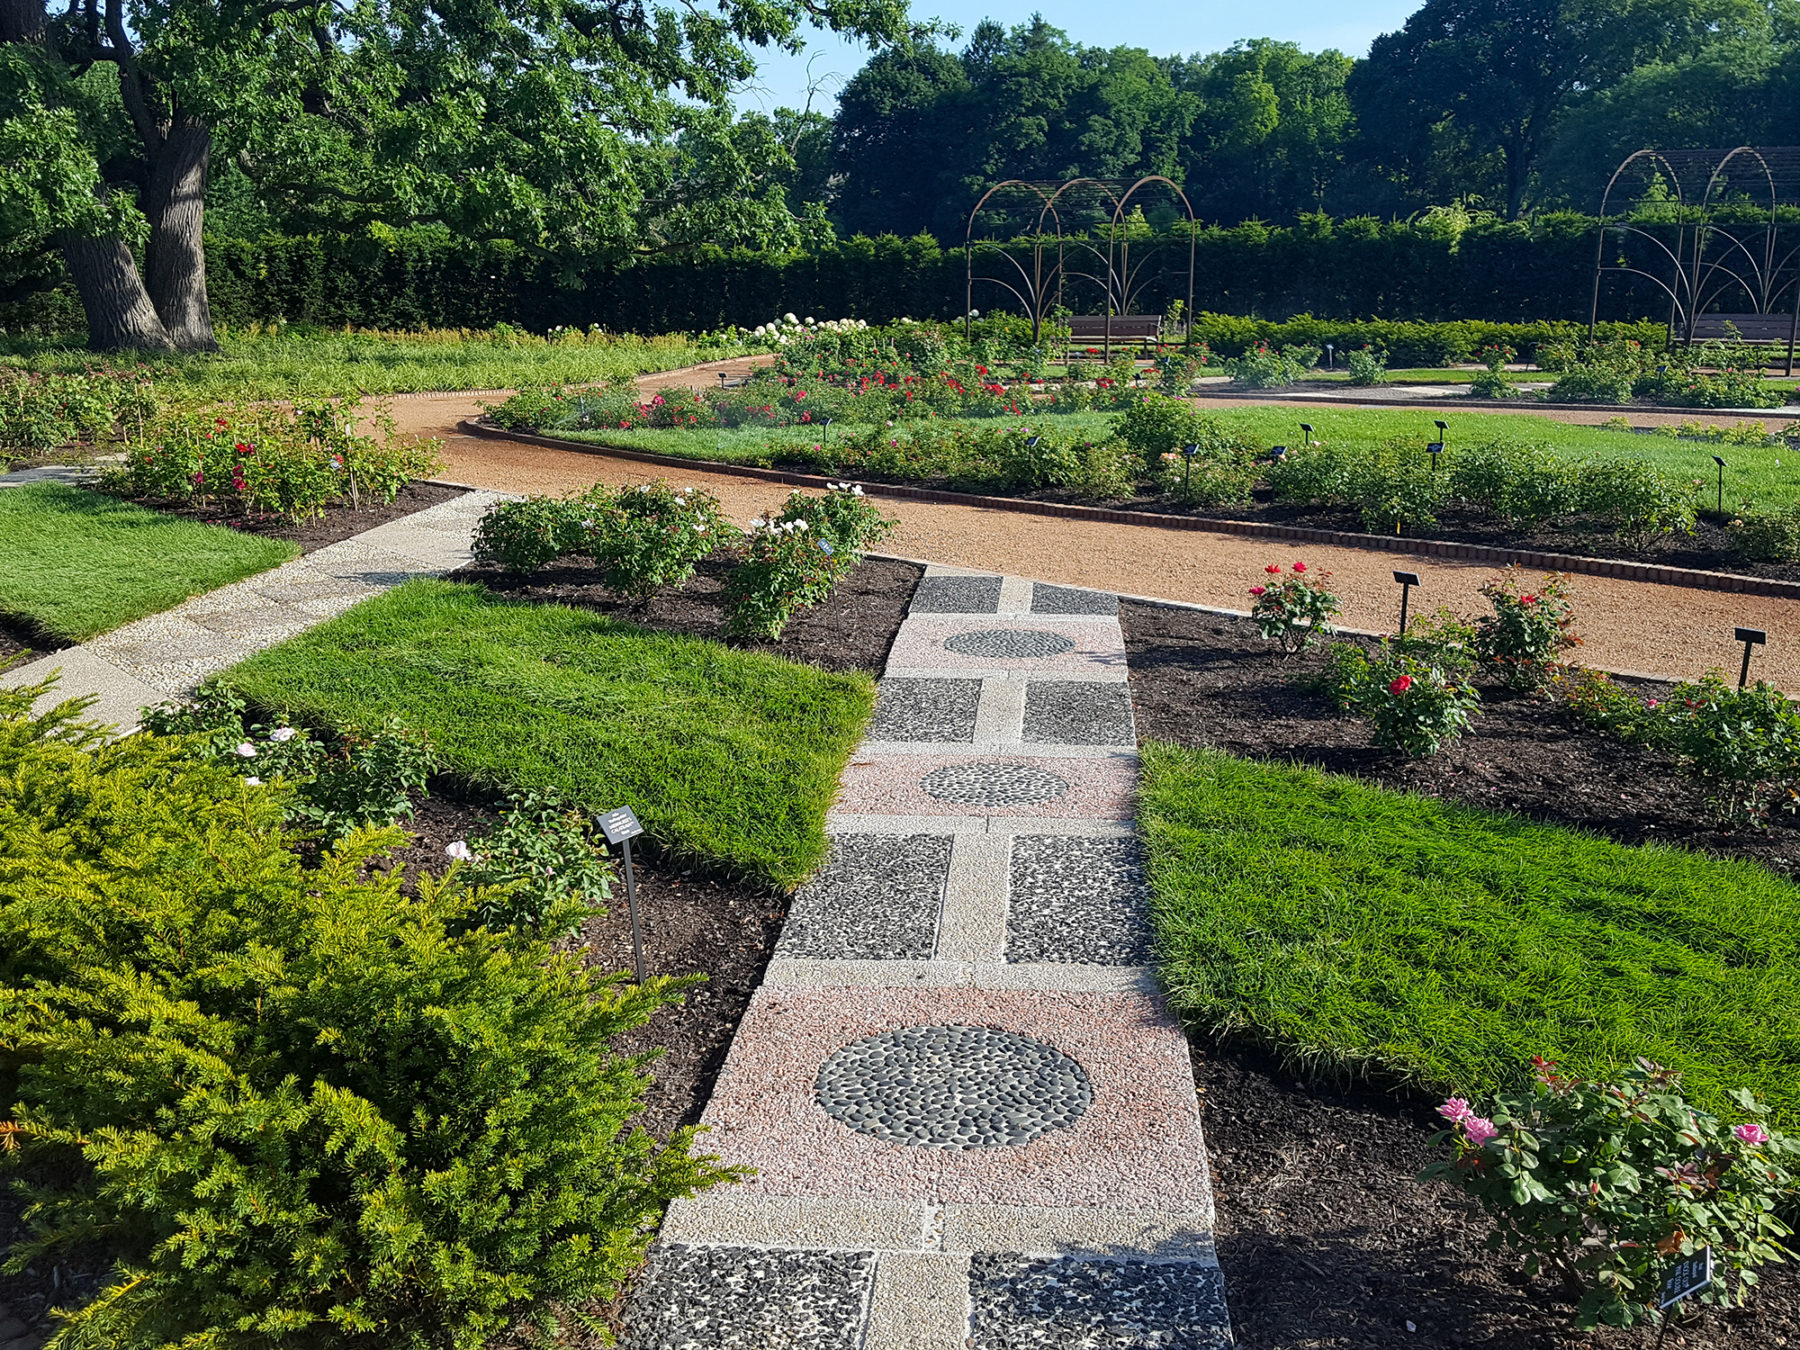 a mosaic path through a garden